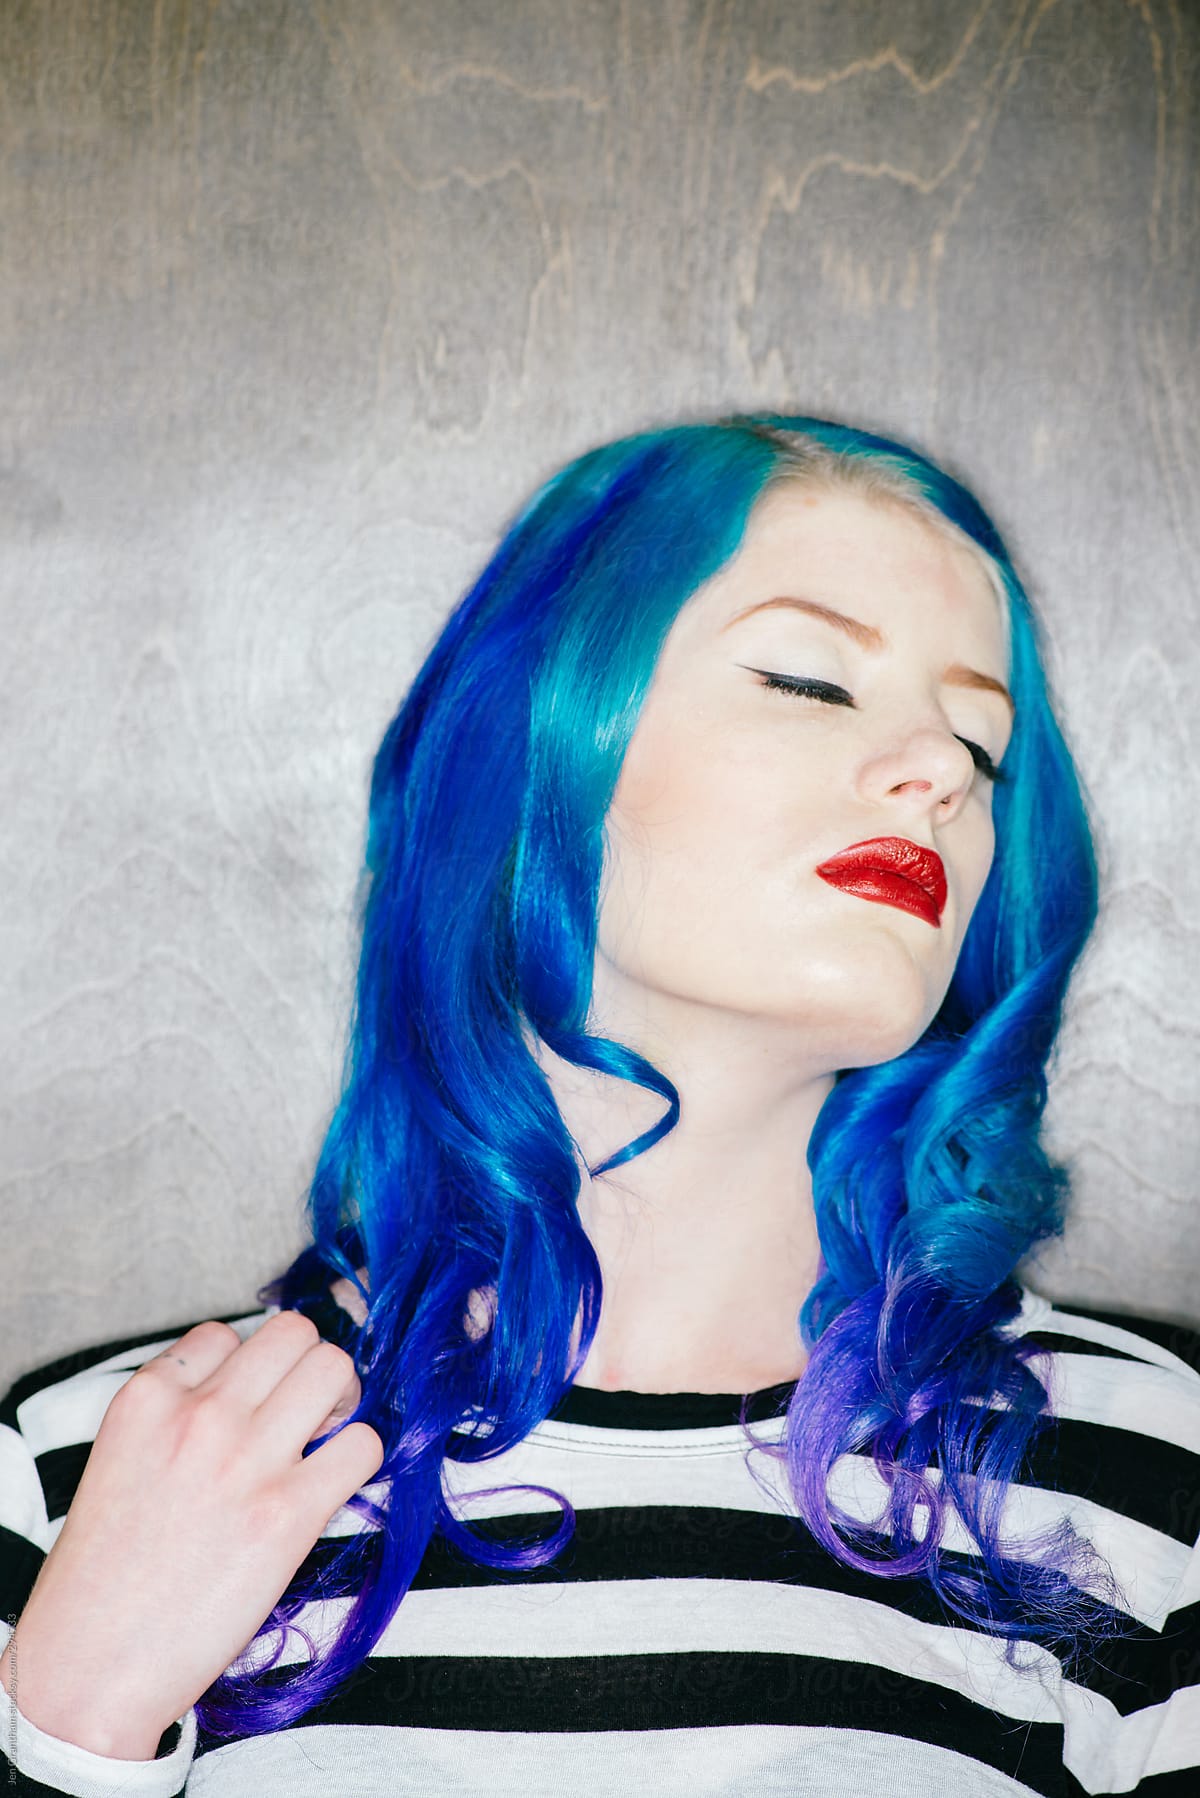 Model with blue hair in harsh light